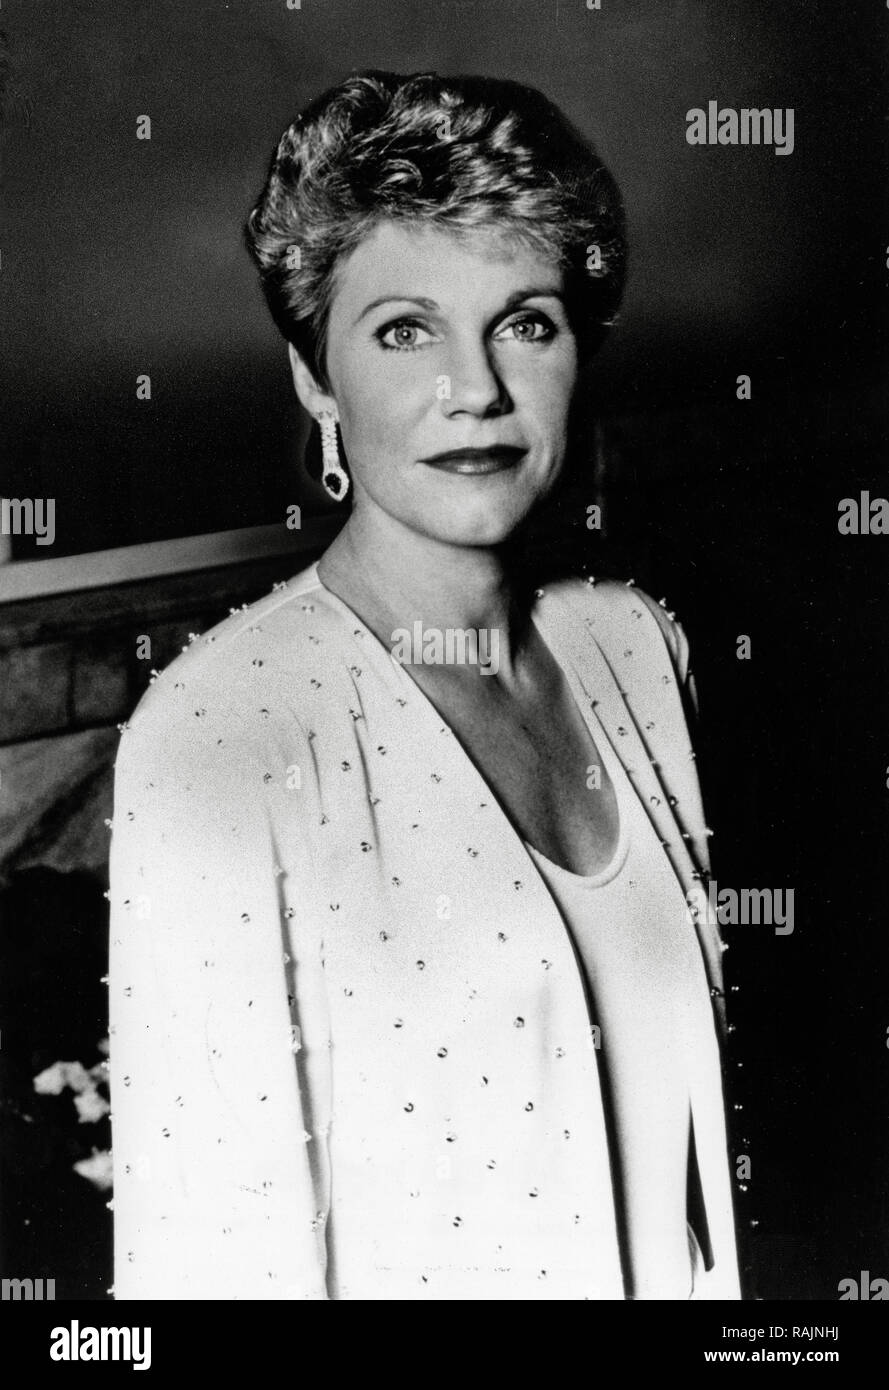 Werbung Foto von Anne Murray, ca. 1985 Datei Referenz # 33636 904 THA Stockfoto